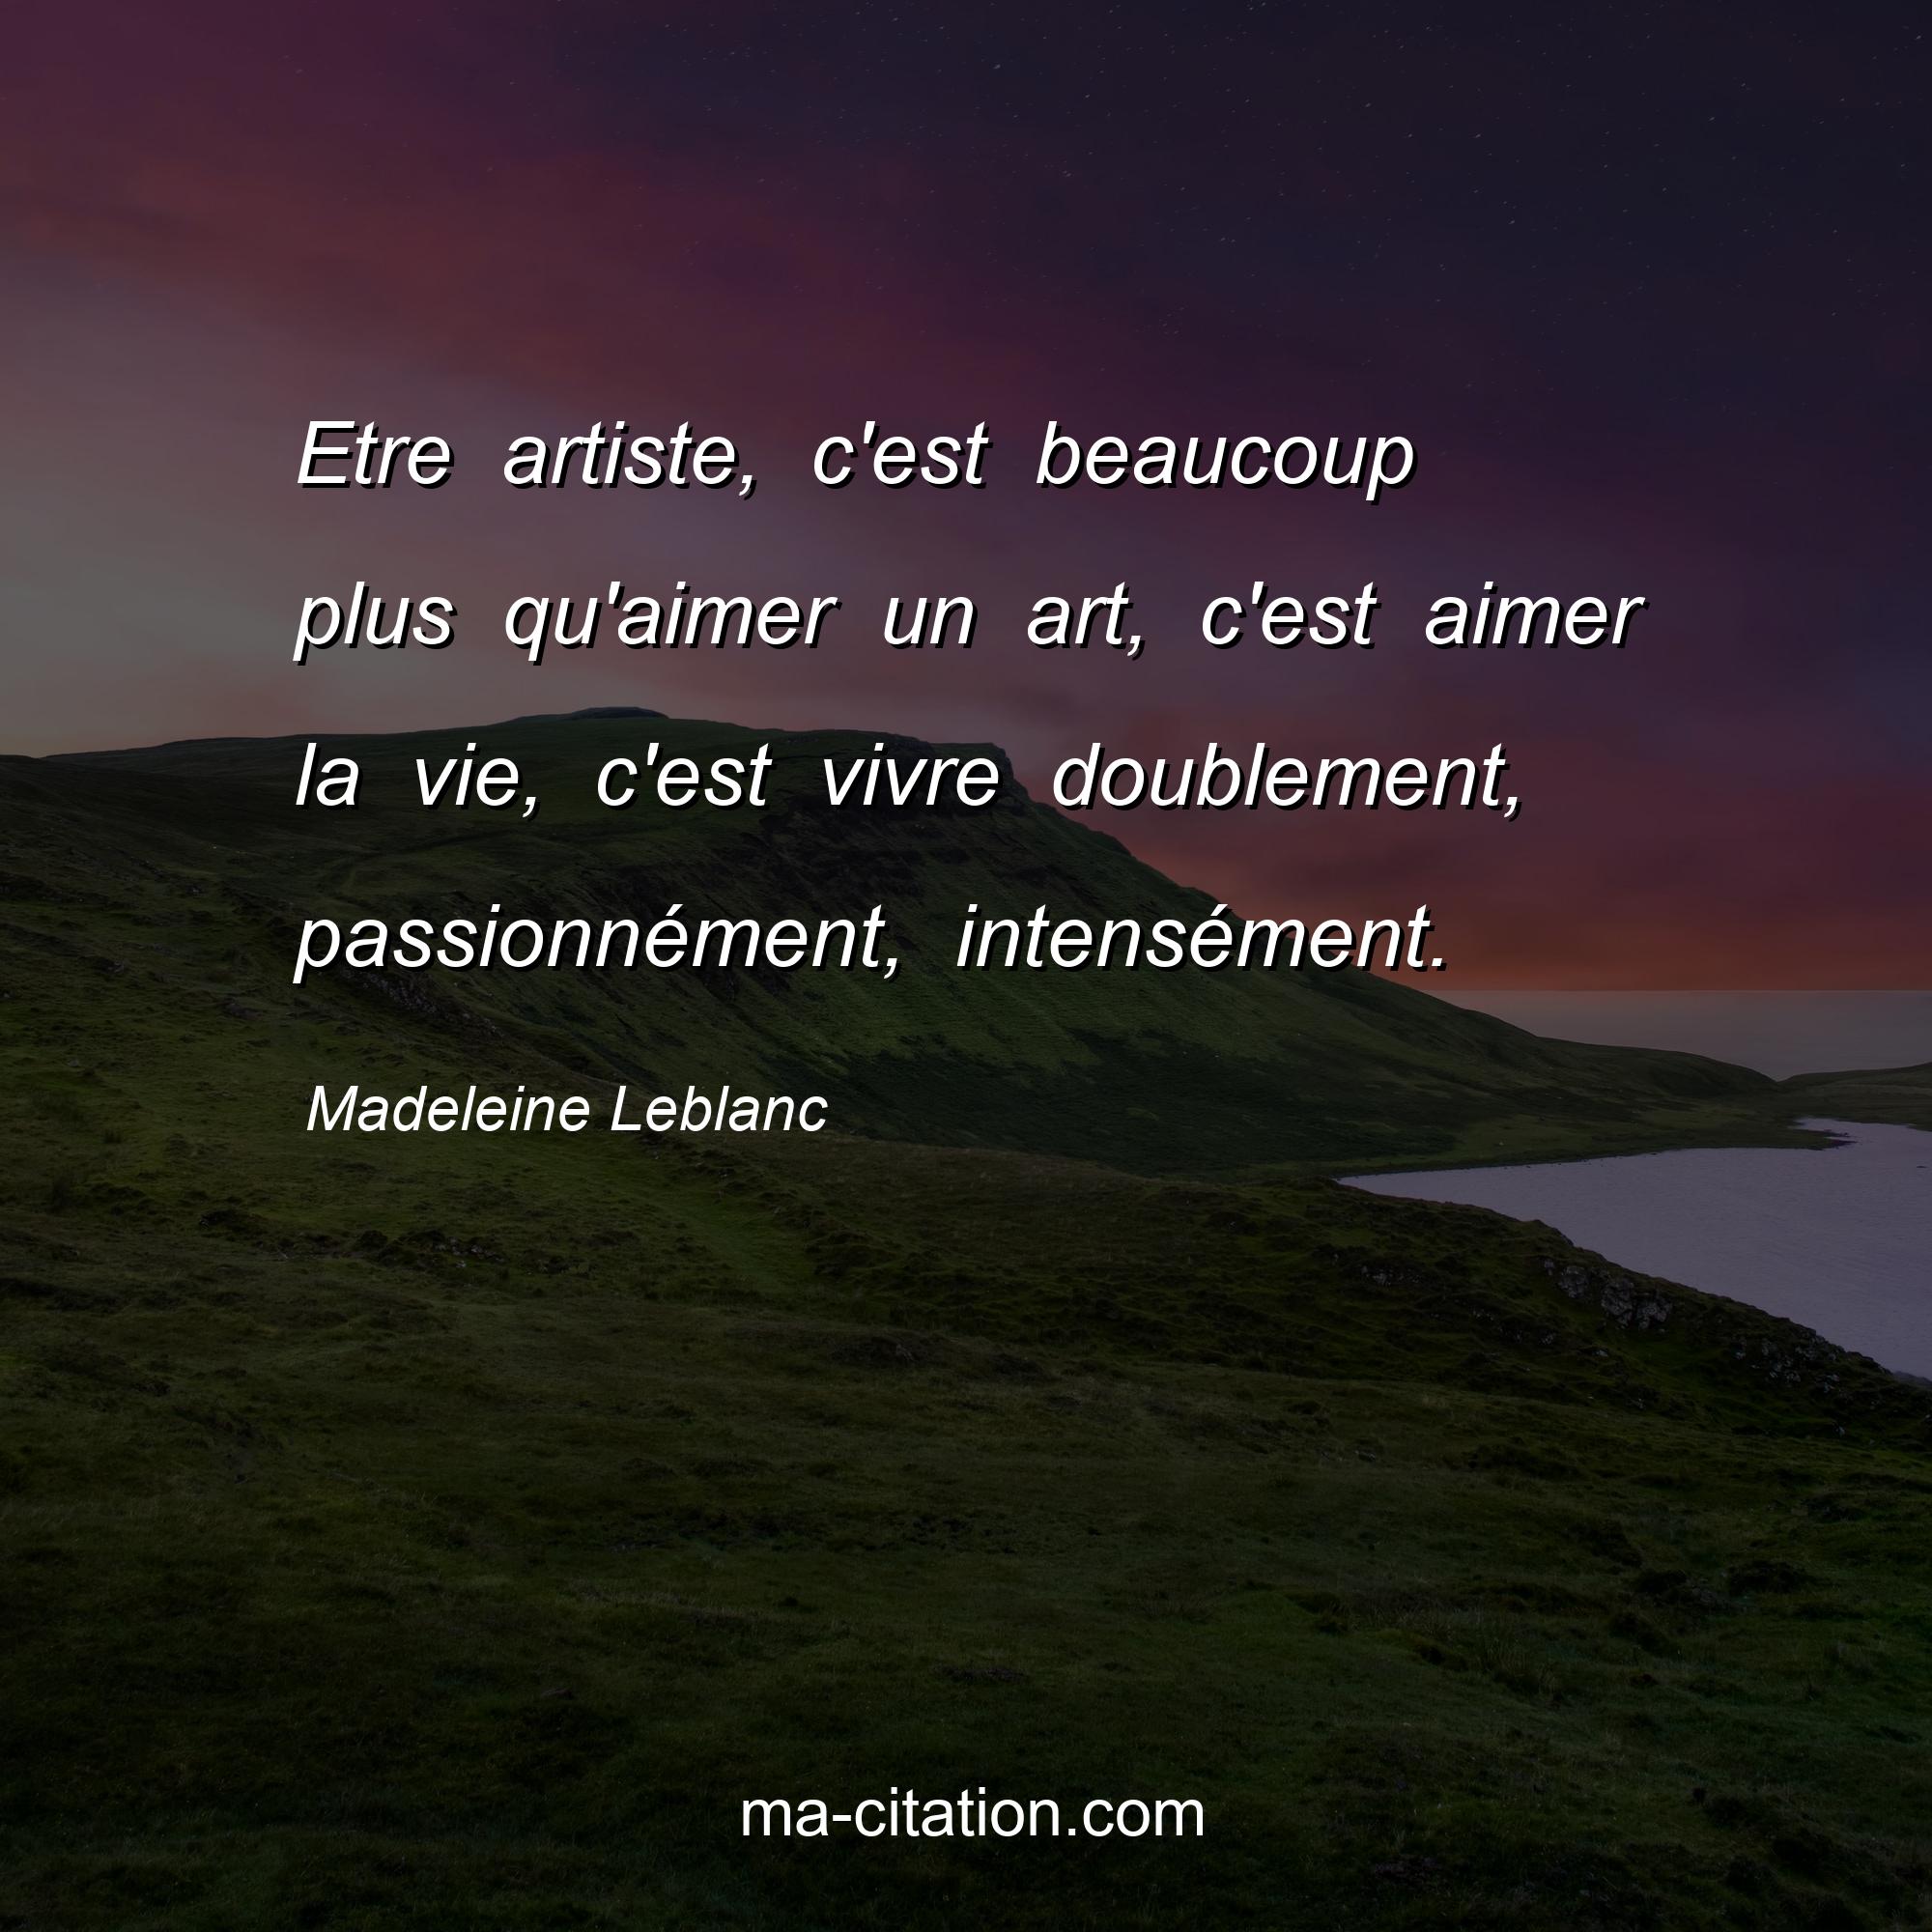 Madeleine Leblanc : Etre artiste, c'est beaucoup plus qu'aimer un art, c'est aimer la vie, c'est vivre doublement, passionnément, intensément.